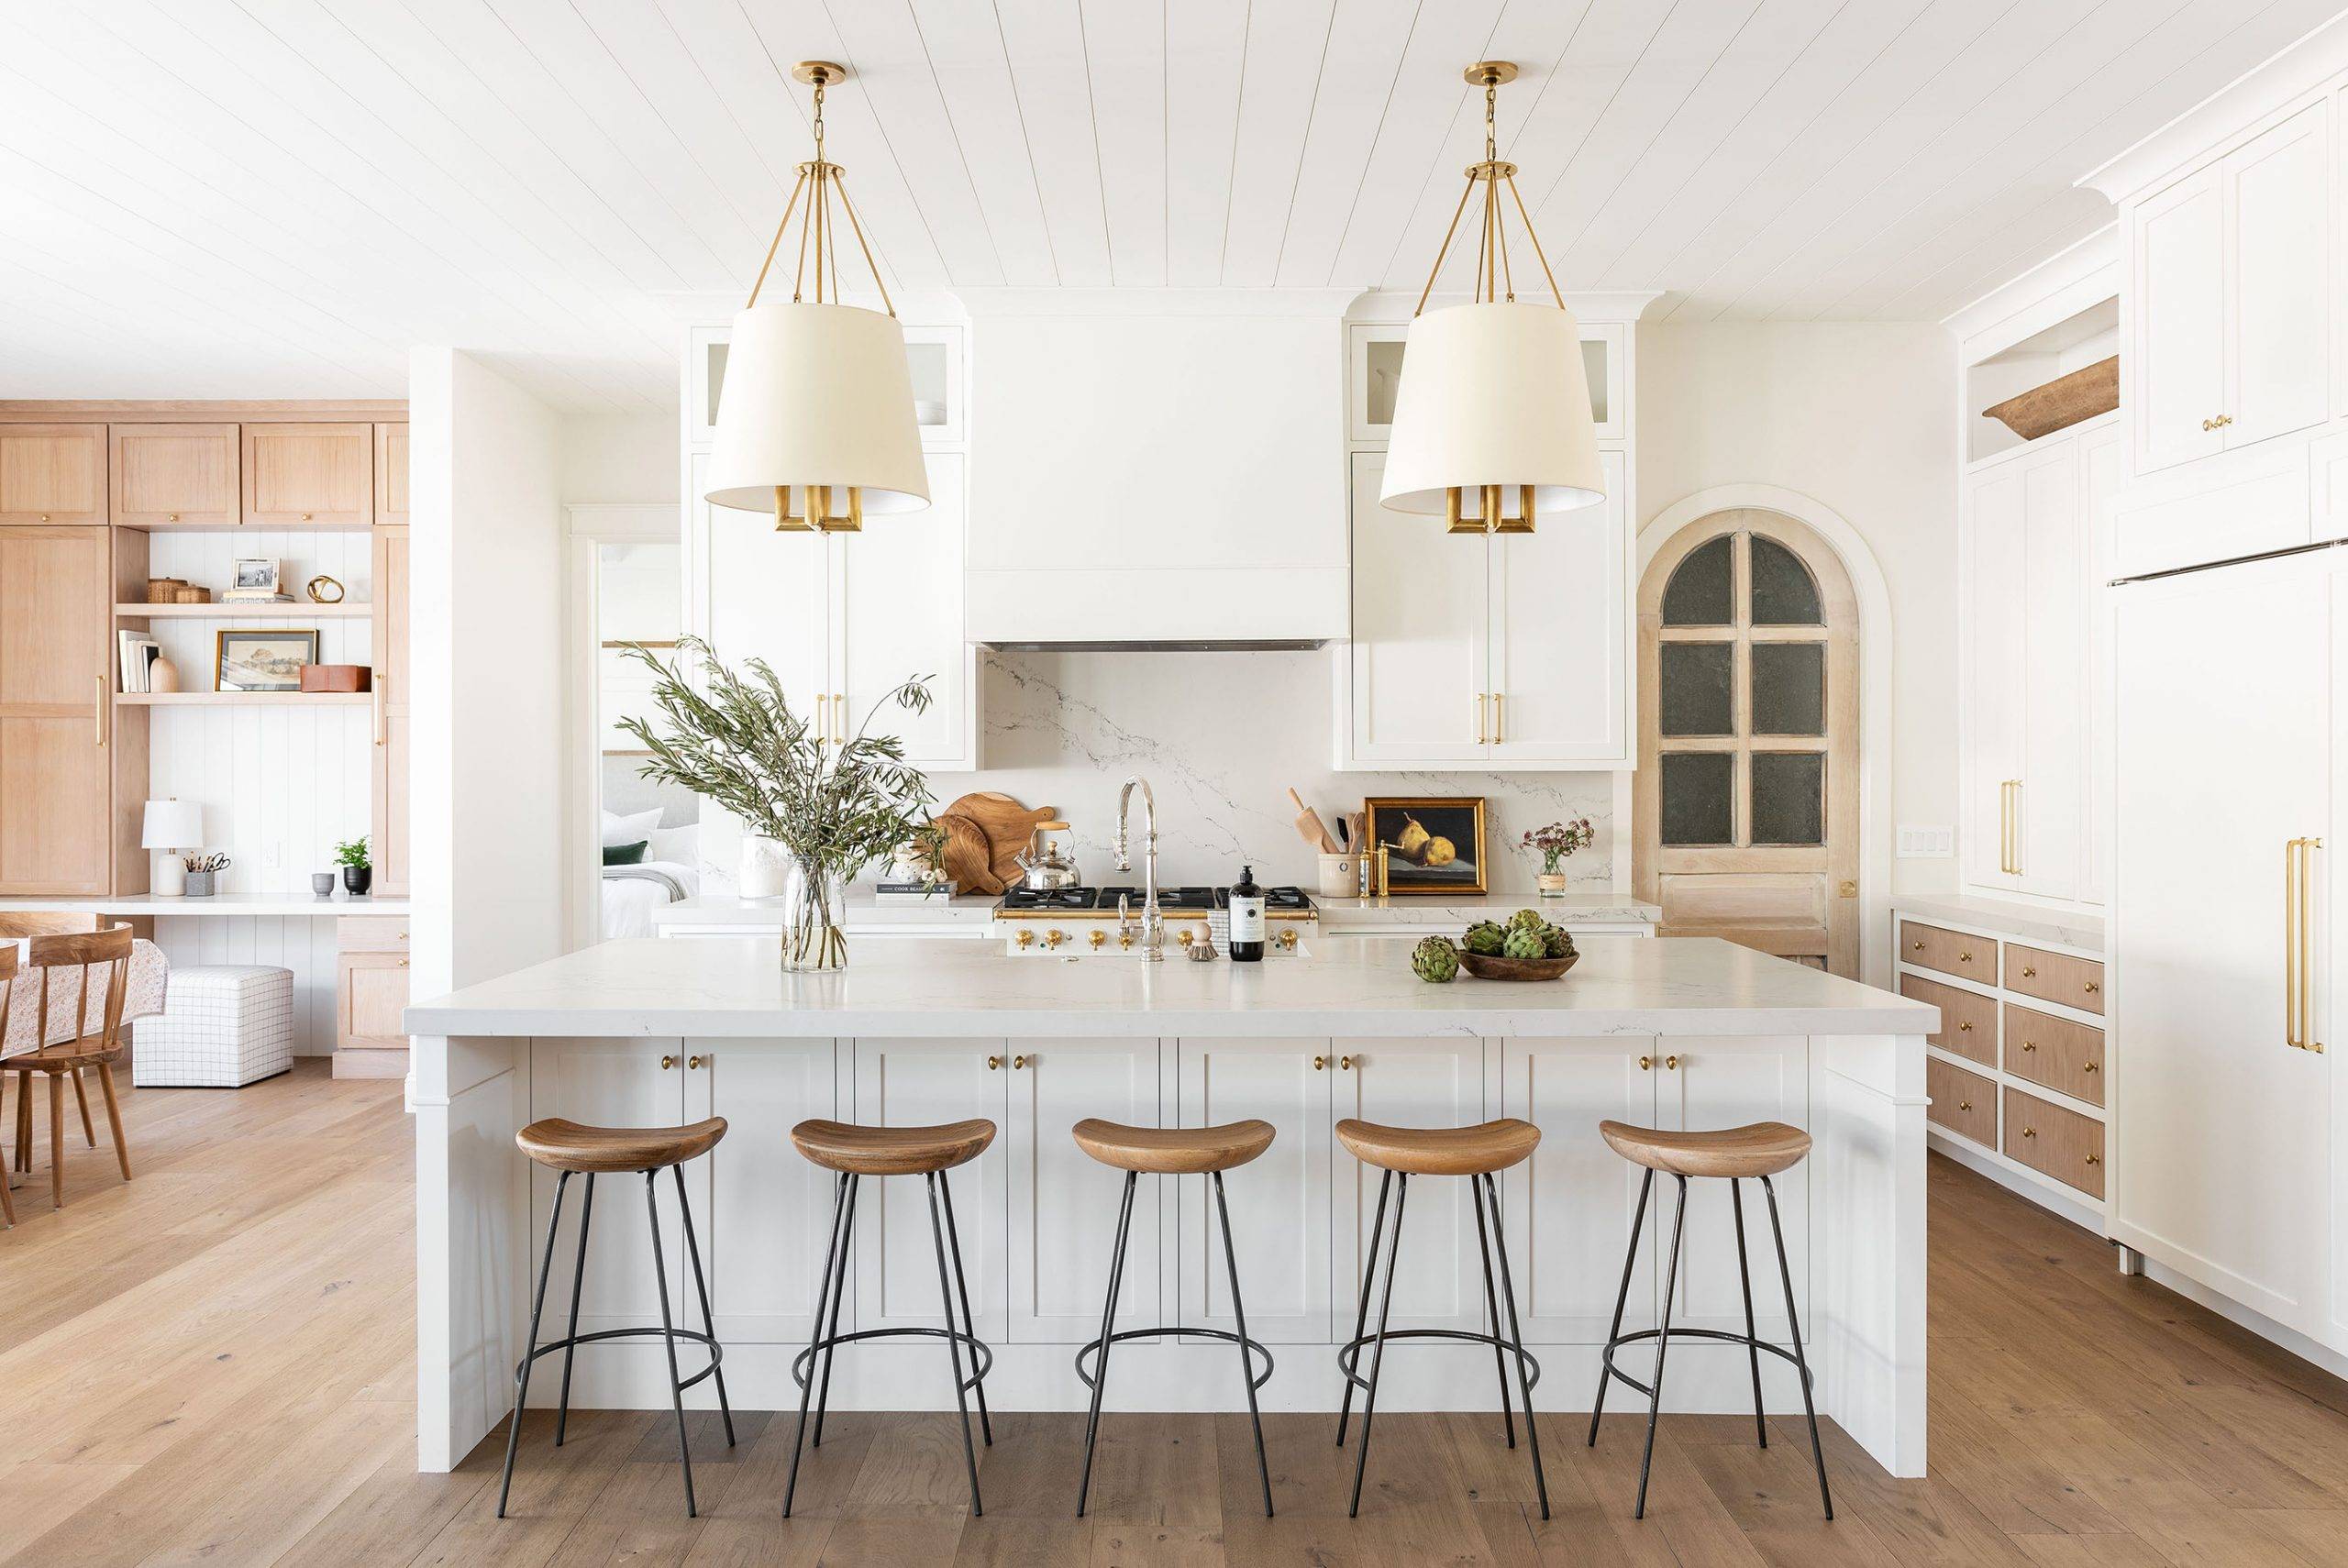 kitchen lighting ideas that will make a big statement | decoist